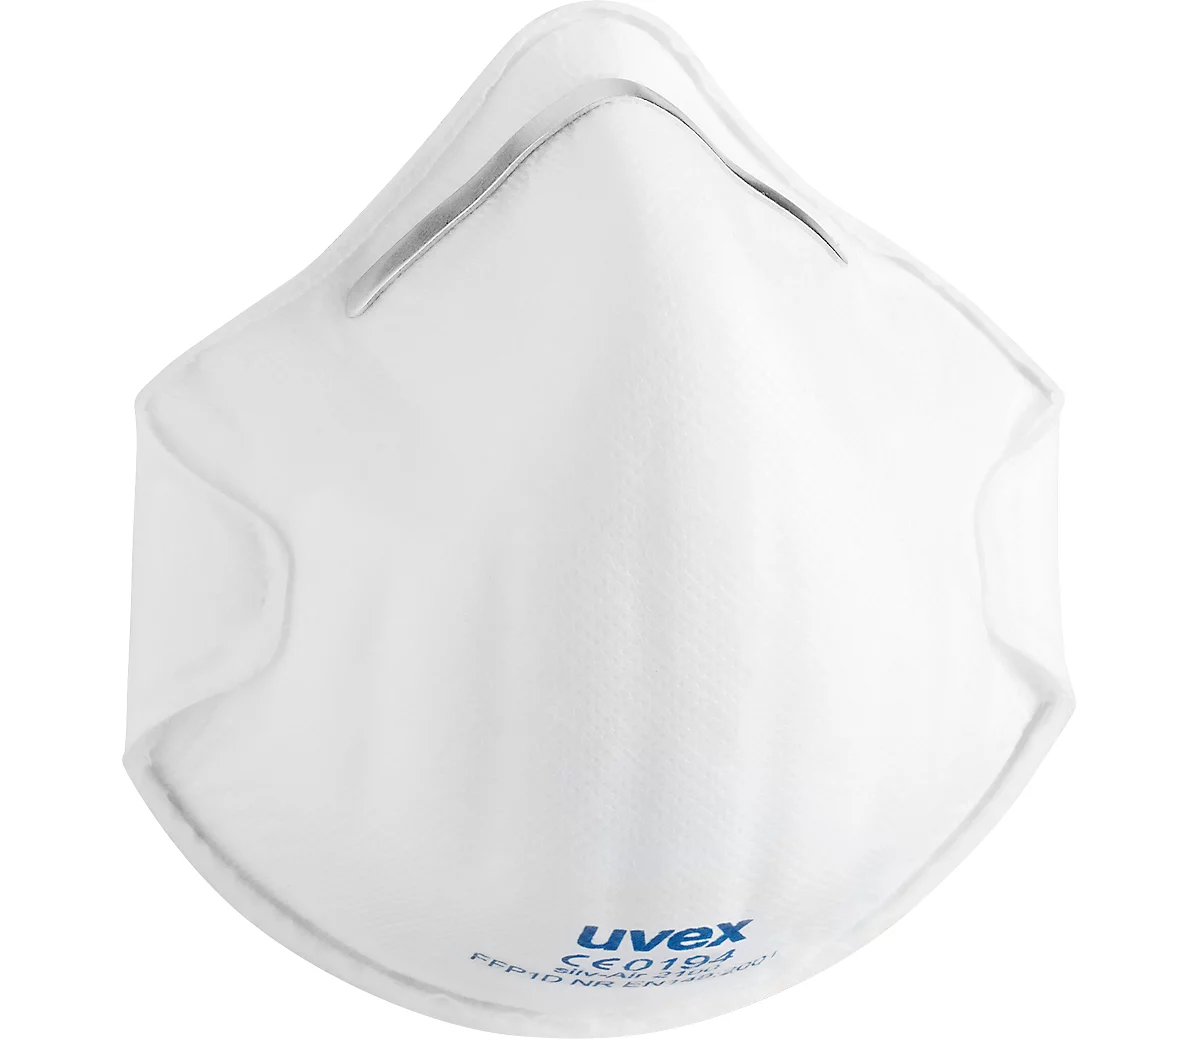 Máscara de protección respiratoria Uvex silv-Air classic 2100, FFP 1 NR, EN 149, ergonómica, blanca, 20 piezas